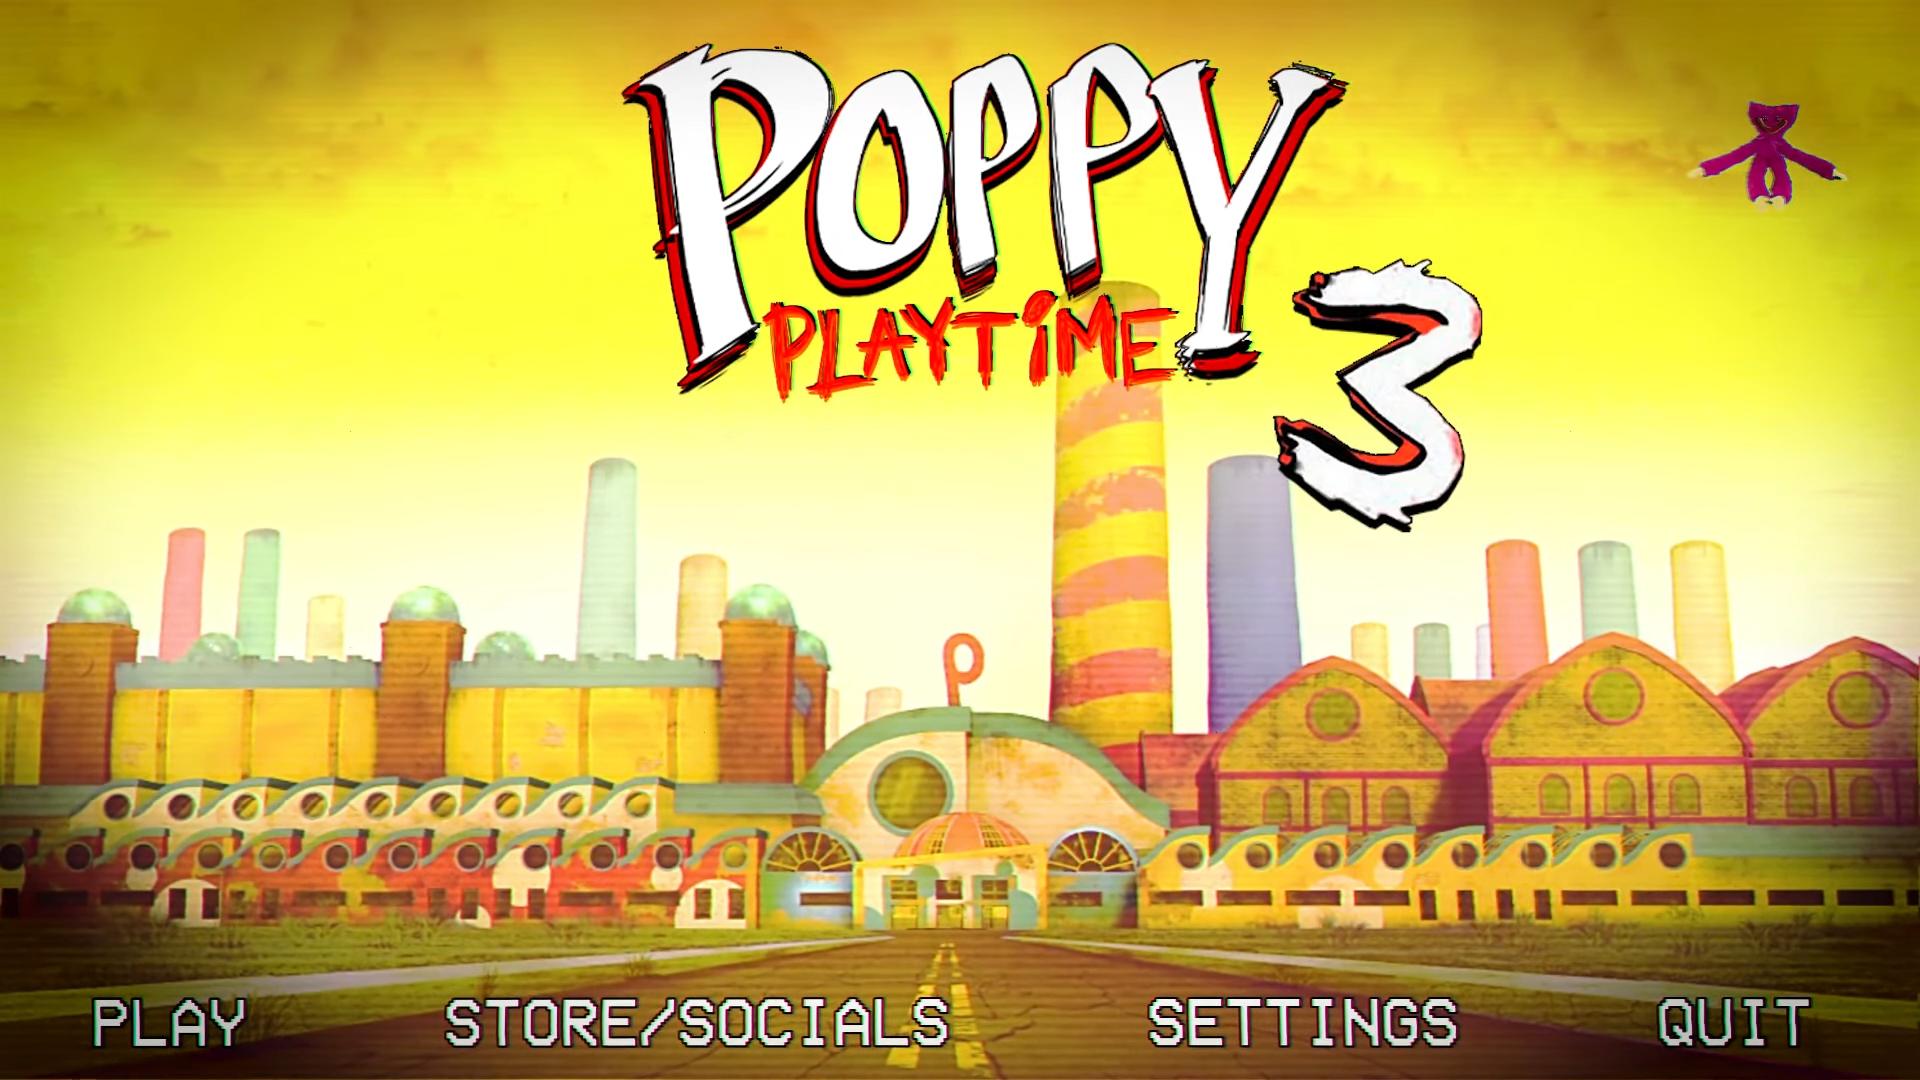 Папе playtime 3. Poppy Playtime игра. Завод Poppy Play time. Фабрика из игры Poppy Playtime. Poppy Playtime главное меню.